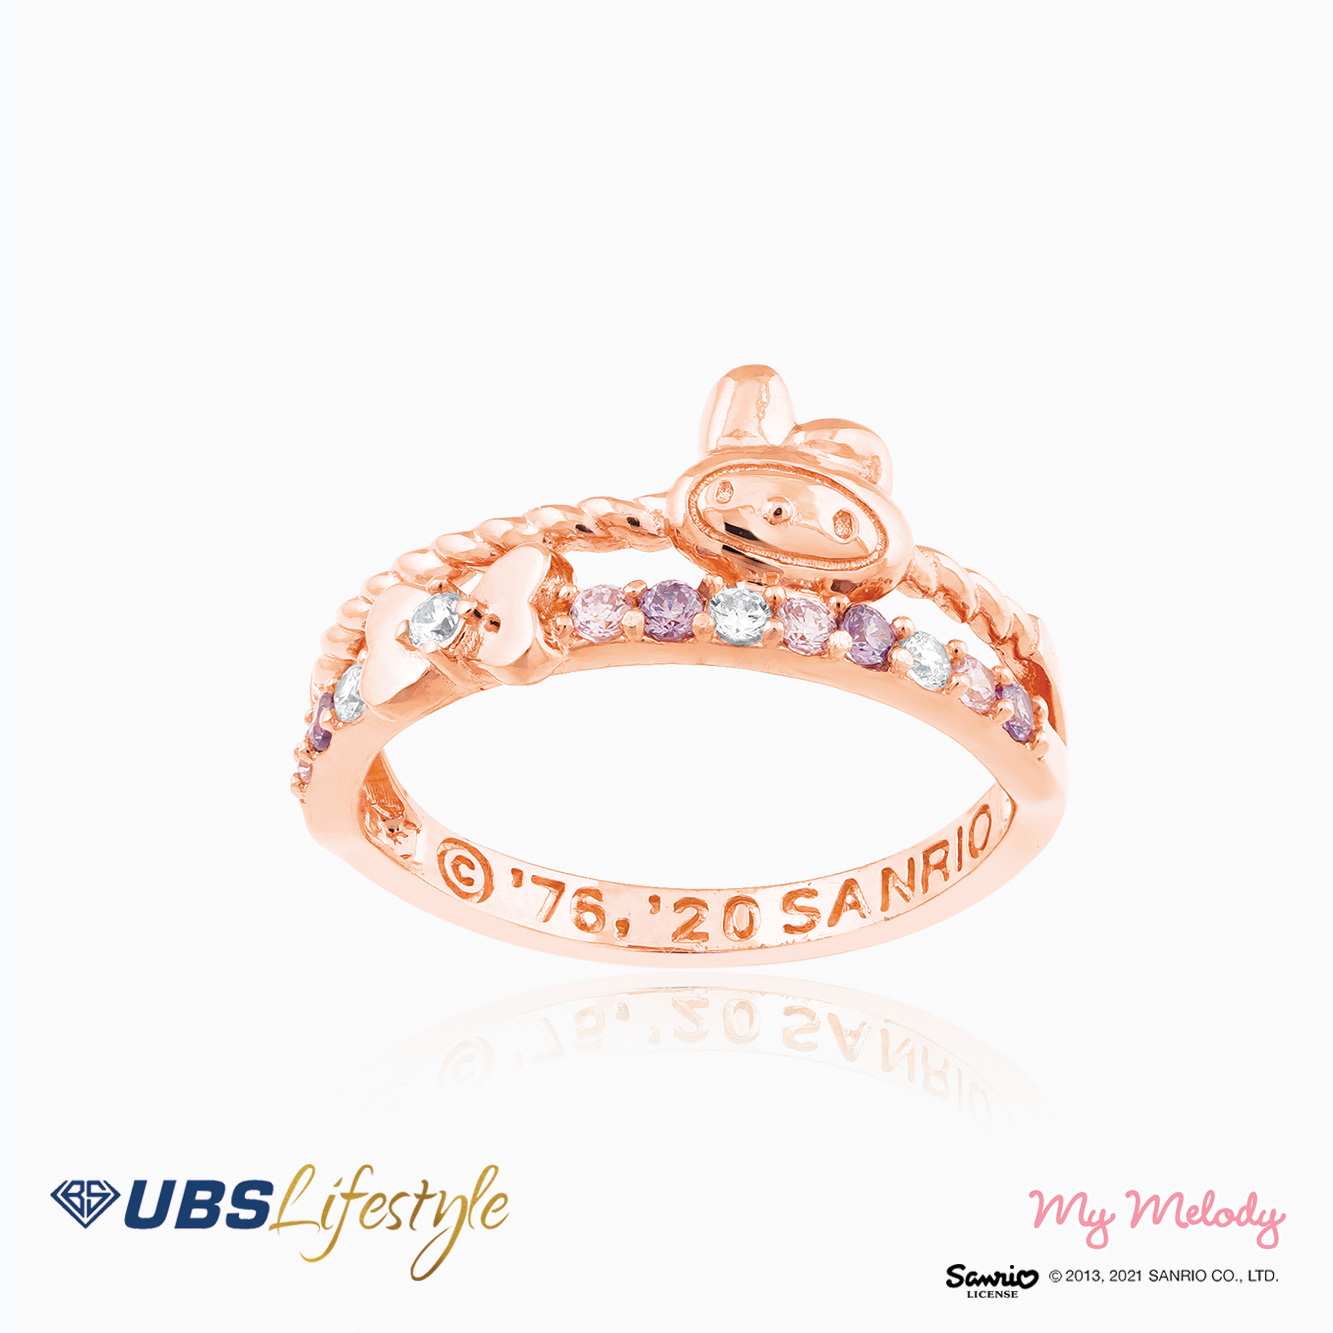 UBS Cincin Emas Sanrio My Melody - Ccz0019 - 17K